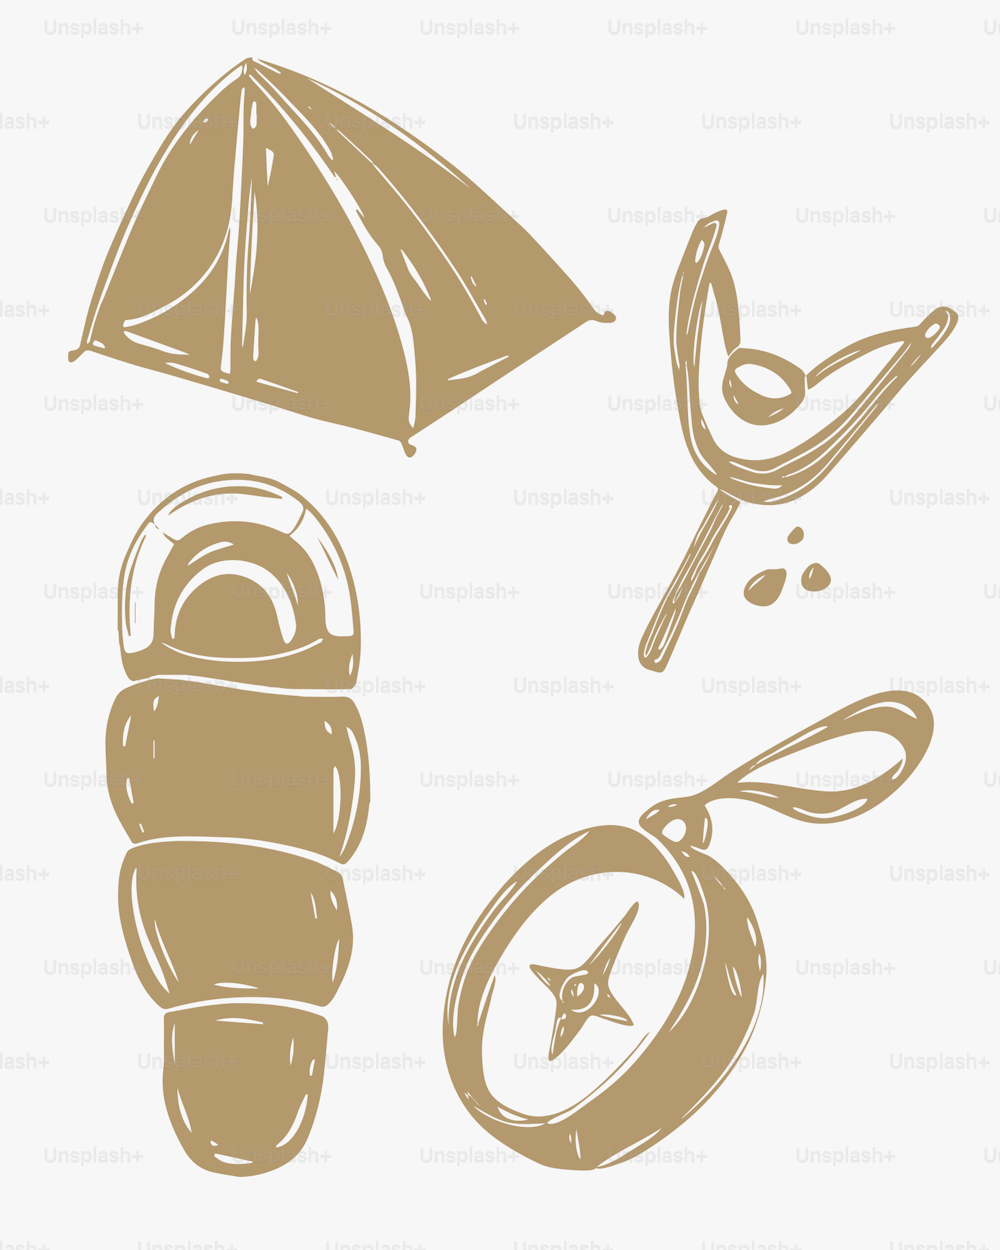 eine Zeichnung eines Zeltes, eines Löffels und eines Kompasses